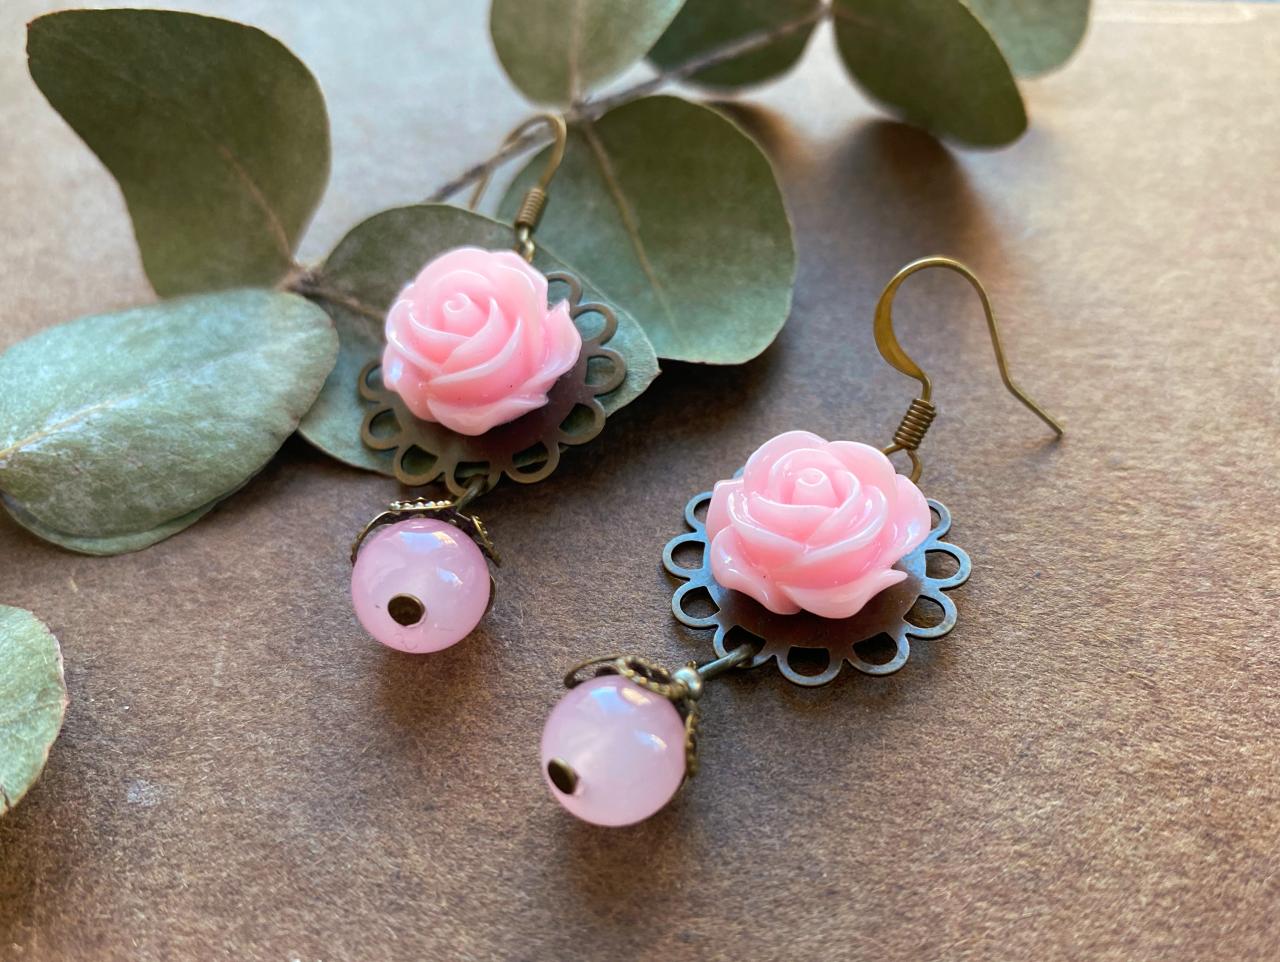 Romantic Pink Rose Earrings With Glass Beads, Flower Earrings, Rose Pendants, Gift For Mom, Romantic Earrings, Floral Earrings, Pink Rose